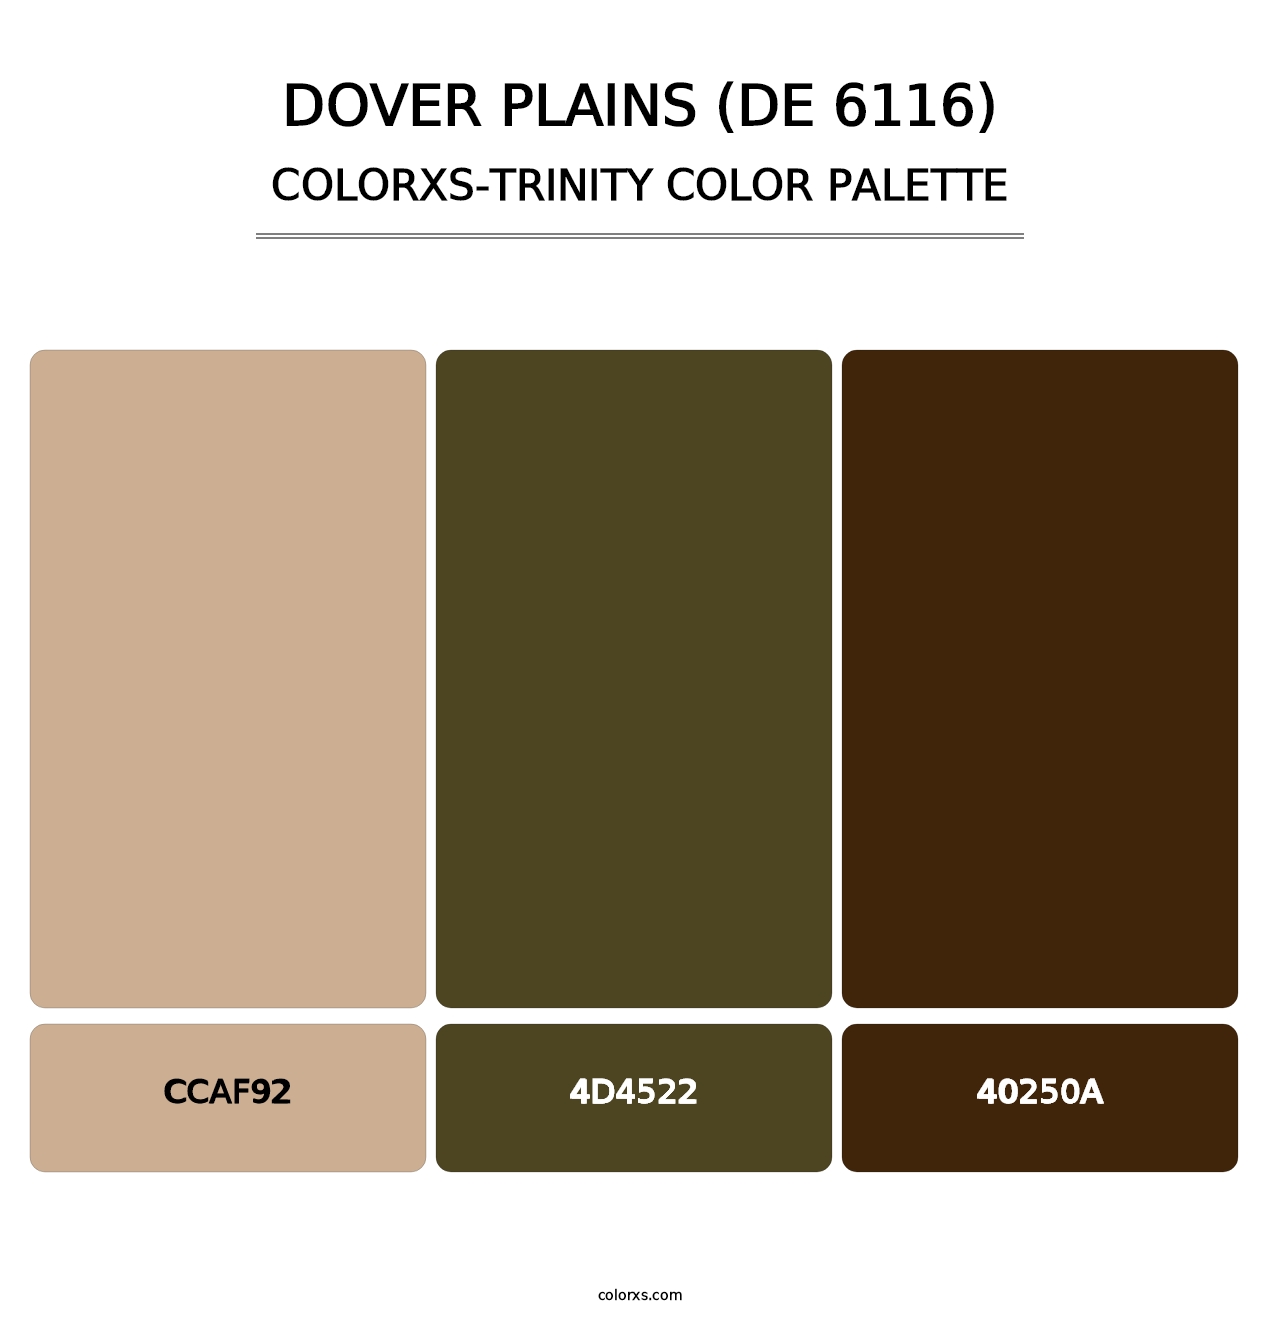 Dover Plains (DE 6116) - Colorxs Trinity Palette